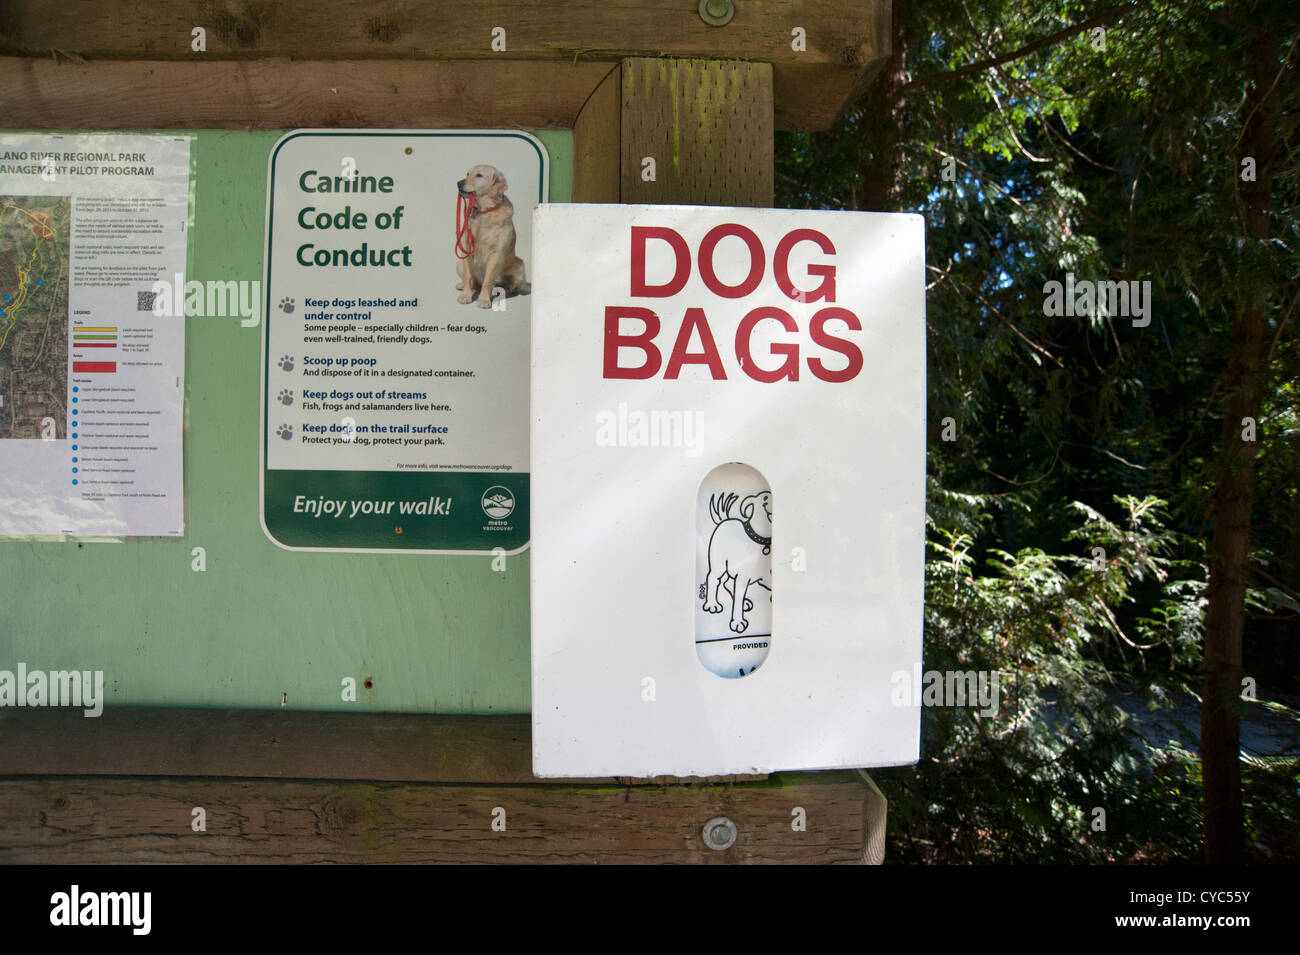 Un babillard au début d'un sentier dans la forêt a un panneau pour le code de conduite et d'une fourniture de sacs de chien Banque D'Images